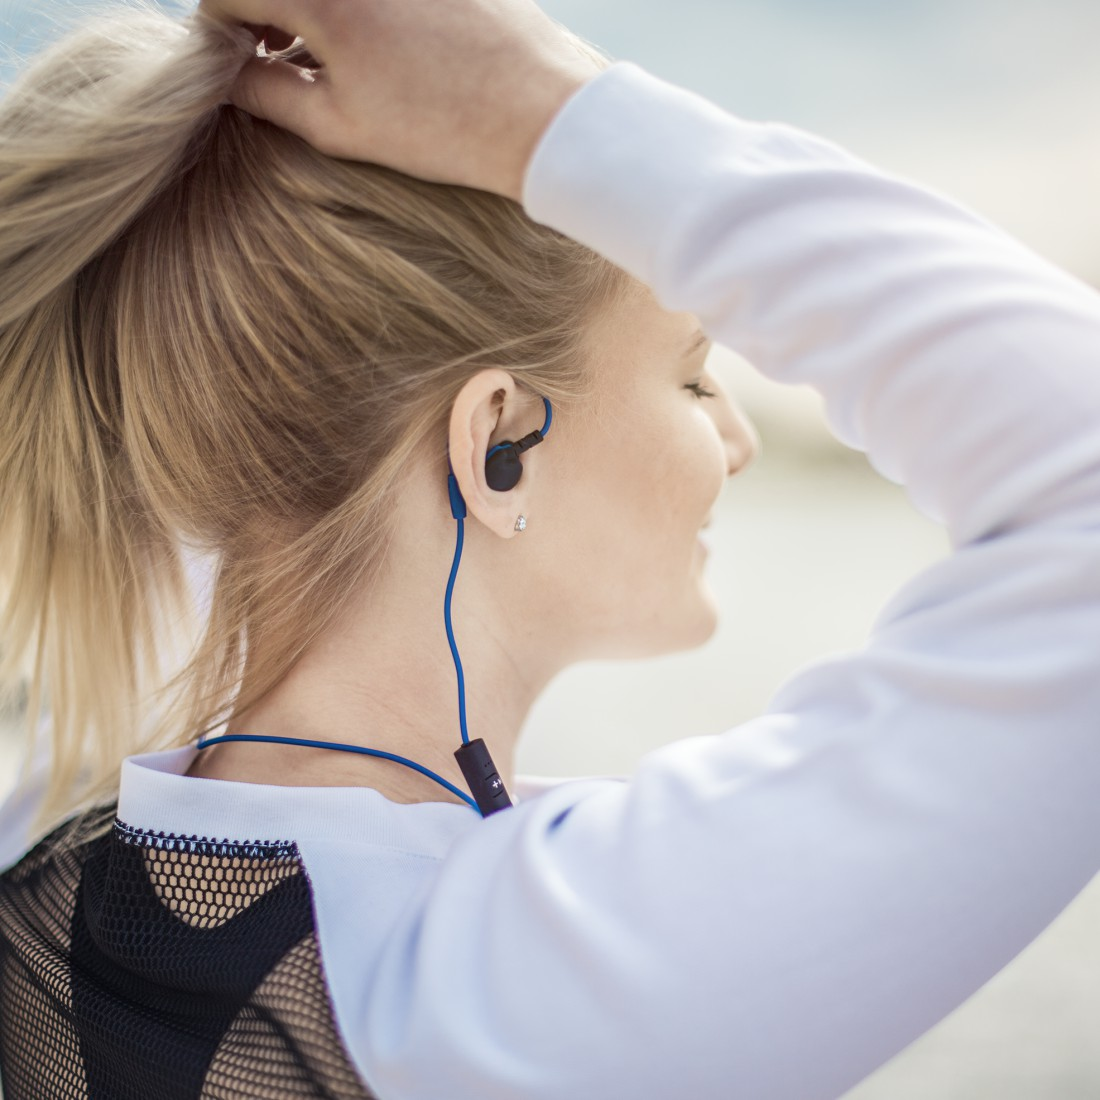 Athletics, Kopfhörer Schwarz/Blau Freedom In-ear HAMA Bluetooth